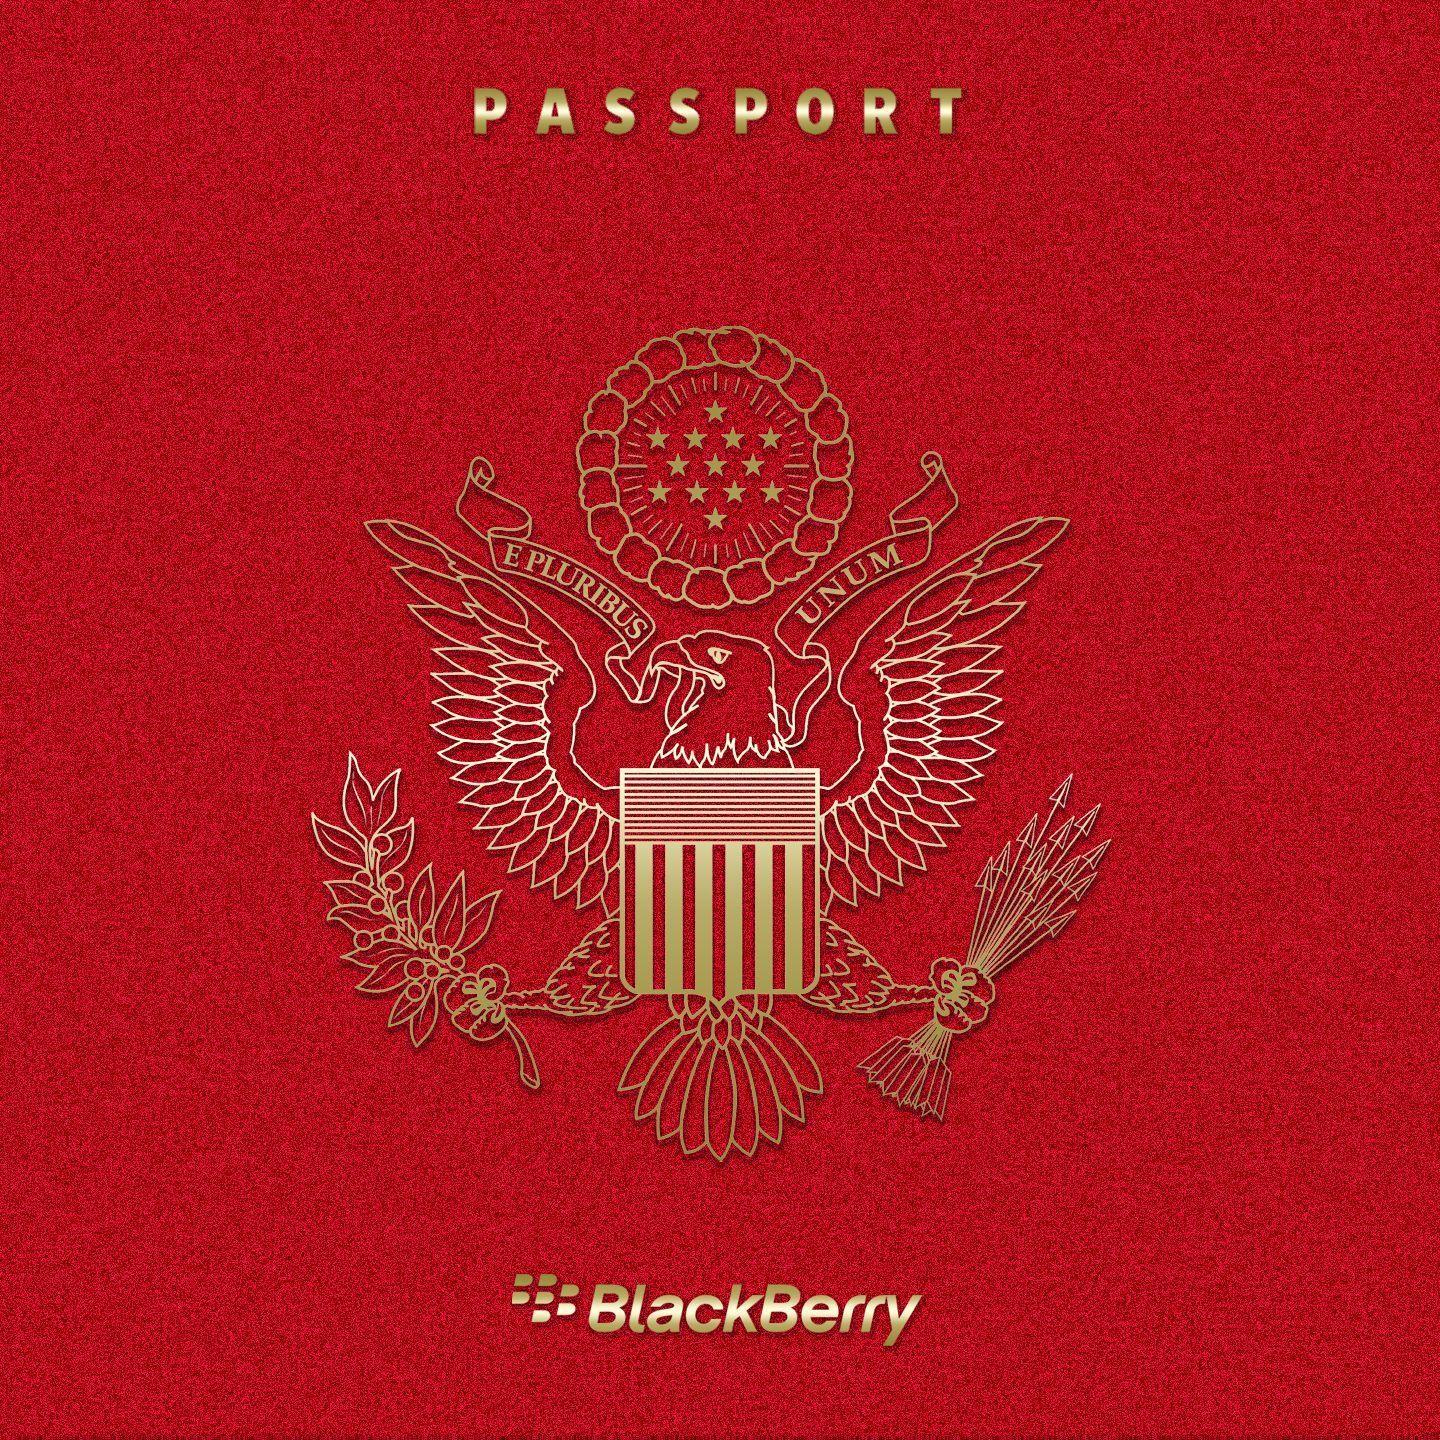 Blackberry Passport Wallpapers - Top Free Blackberry Passport Backgrounds -  Wallpaperaccess